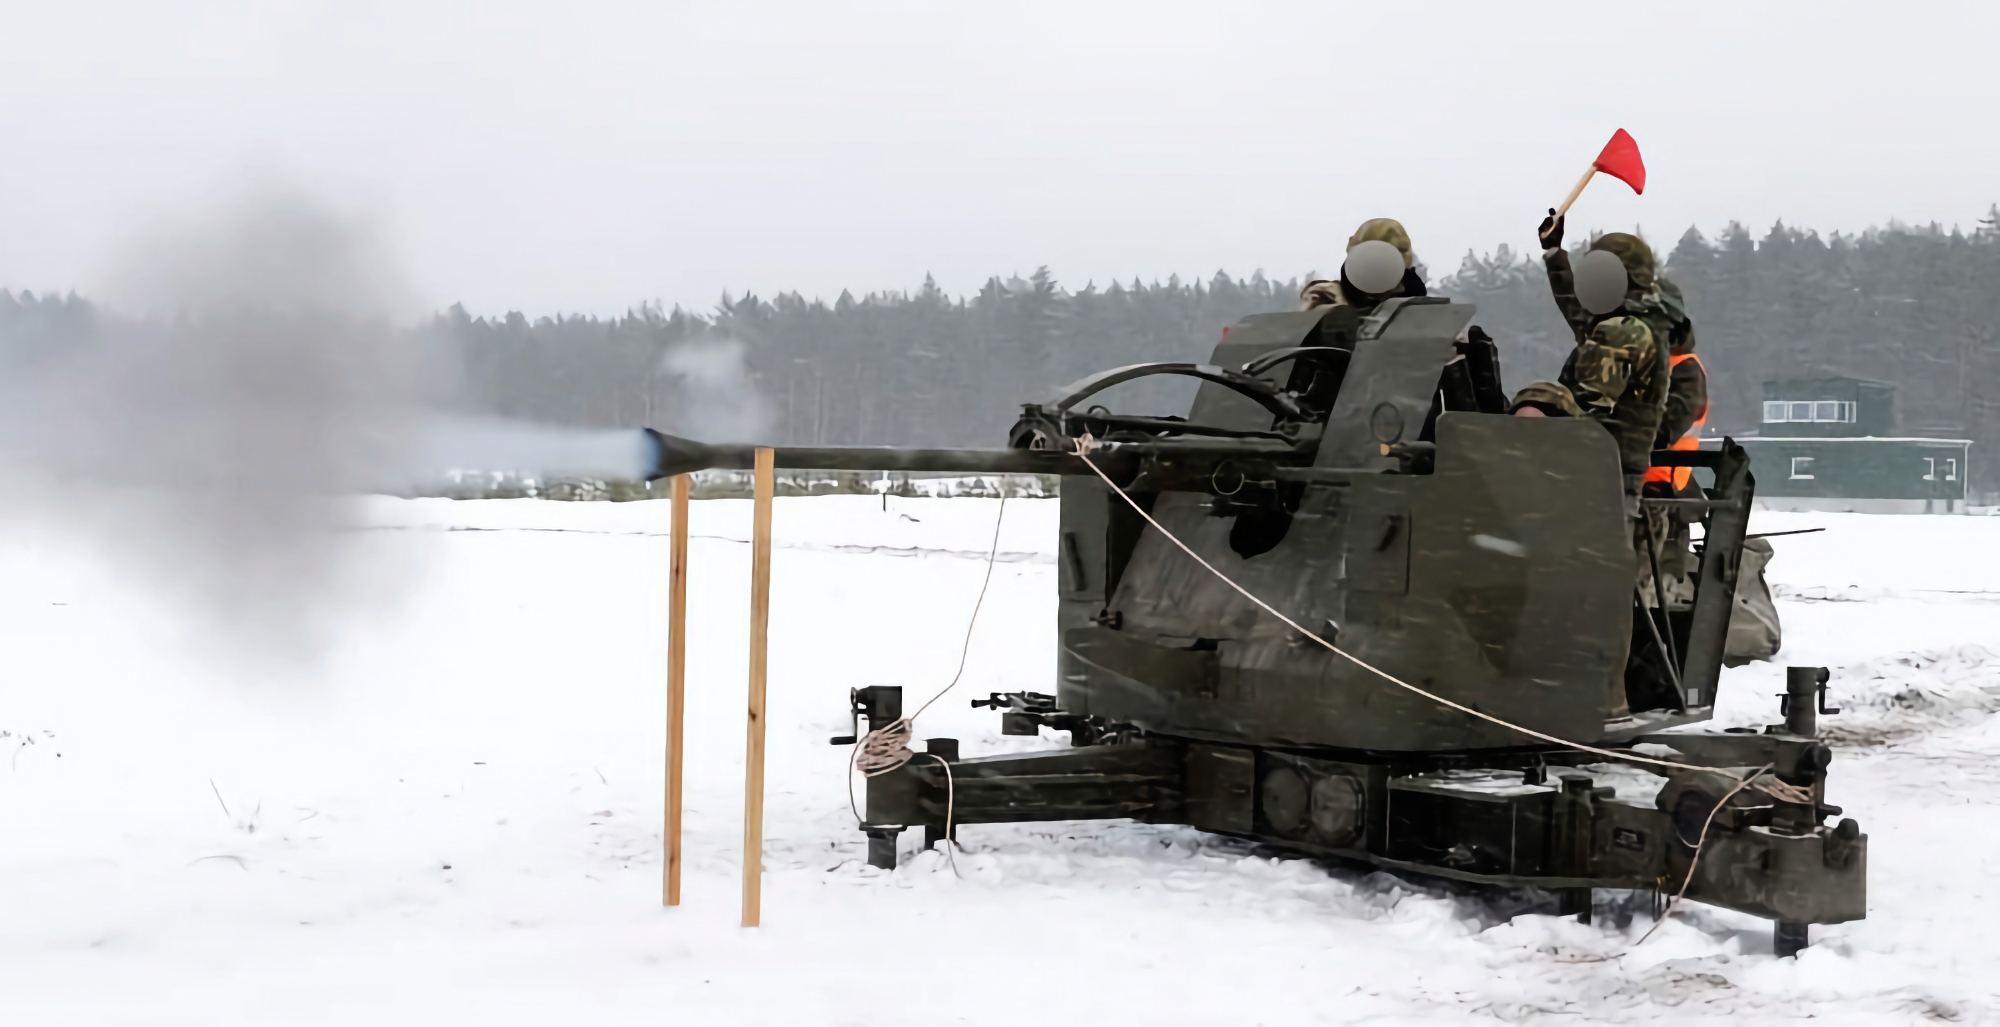 L'Ucraina riceve un lotto di cannoni antiaerei svedesi L-70 che possono distruggere bersagli aerei fino a 12,5 km di distanza